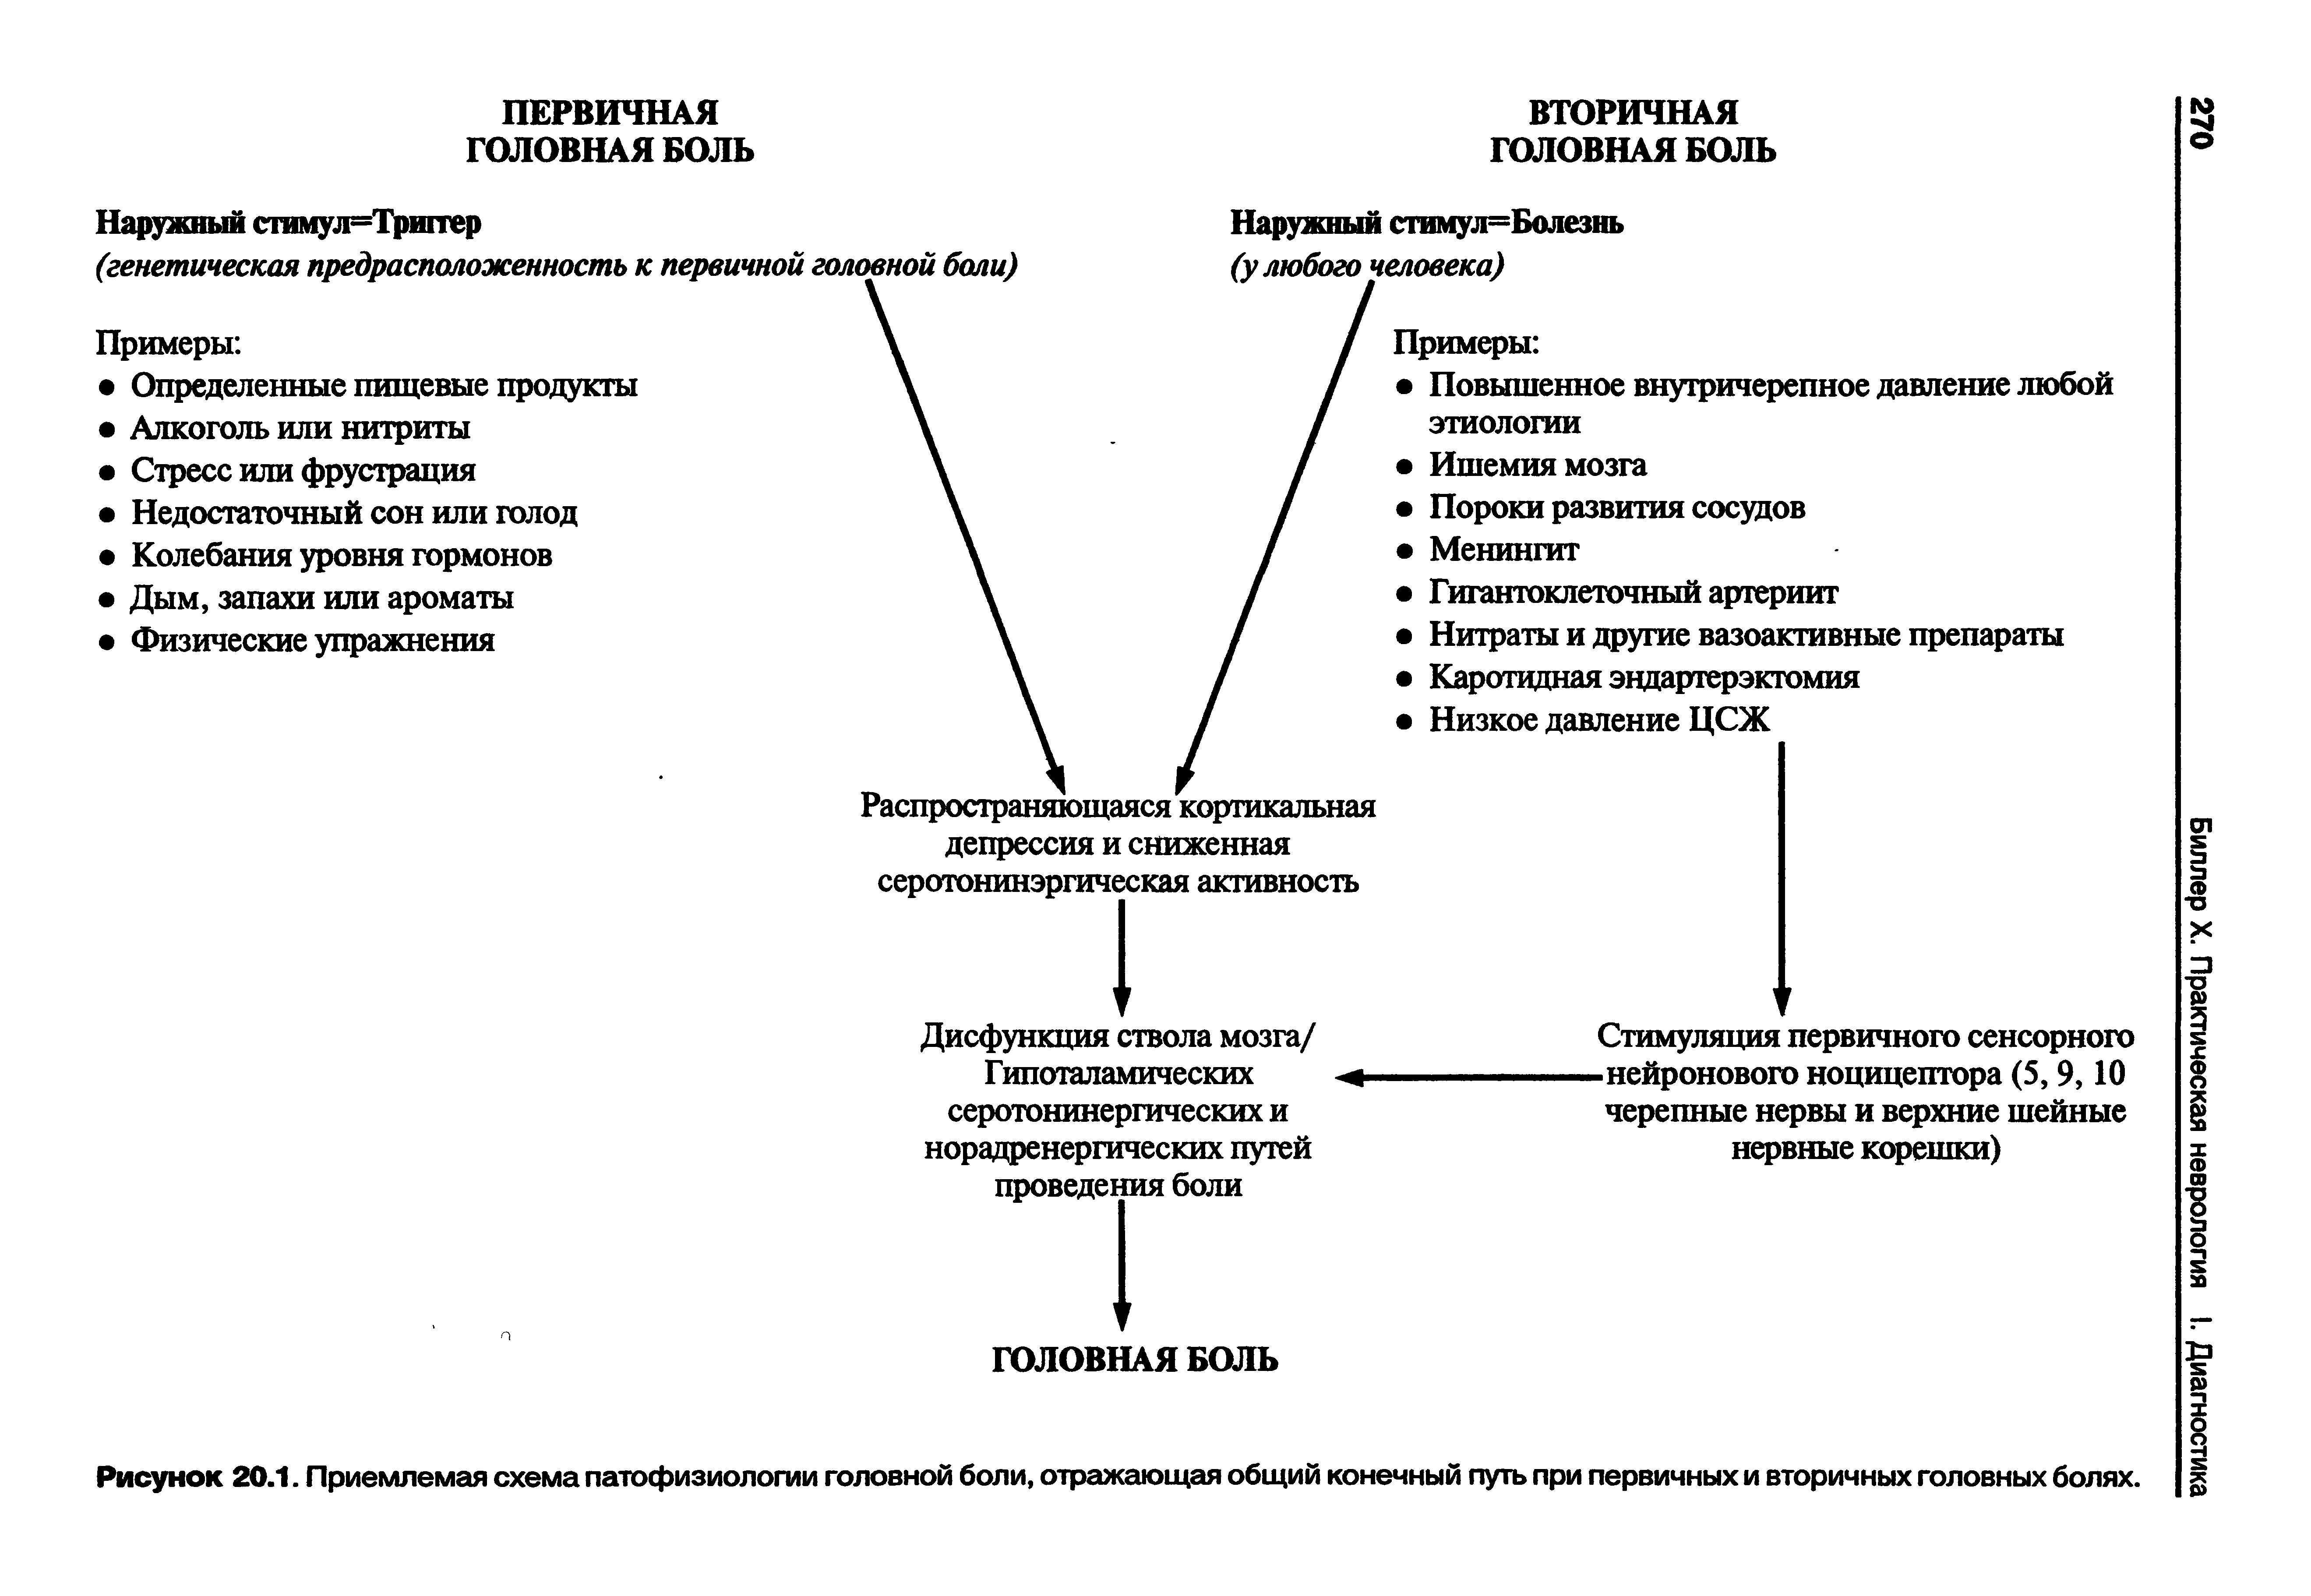 Рисунок 20.1. Приемлемая схема патофизиологии головной боли, отражающая общий конечный путь при первичных и вторичных головных болях.